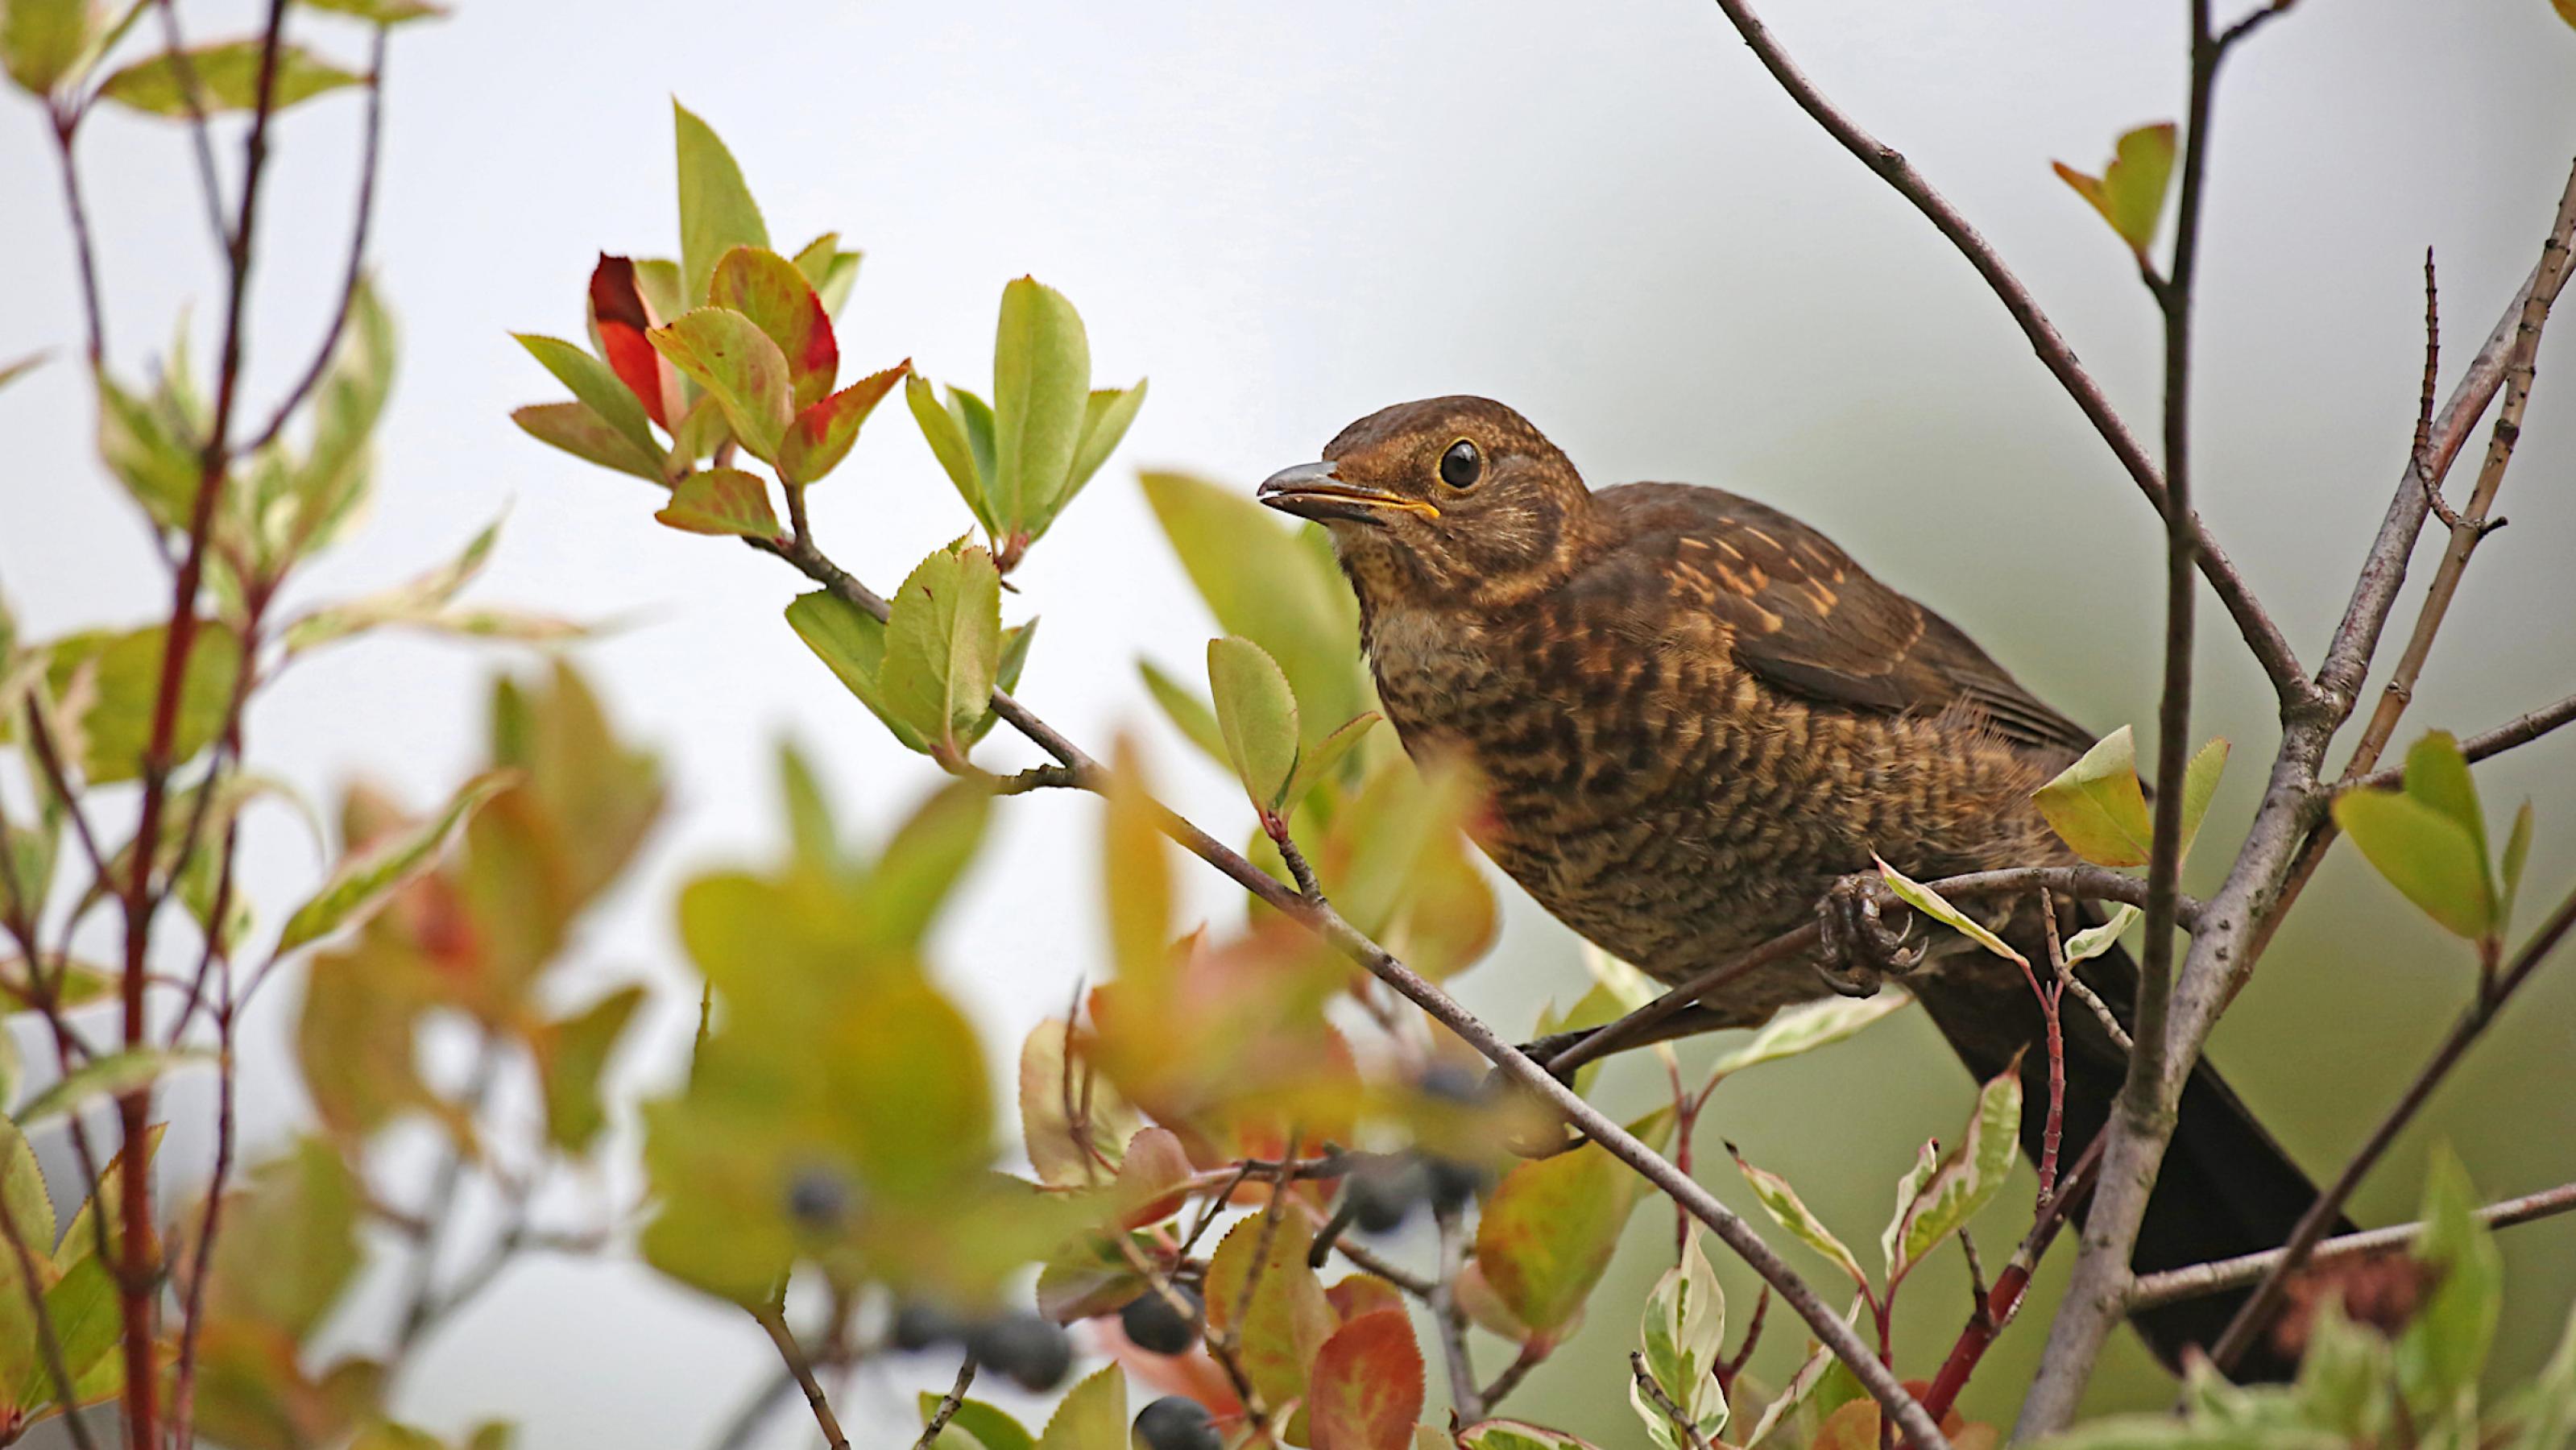 Ein braun-beige gesprenkelter Vogel mit braunen Augen sitzt in einem Strauch. Dessen Blätter sind grün und rötlich gefärbt, der Strauch trägt schwarze Beeren.